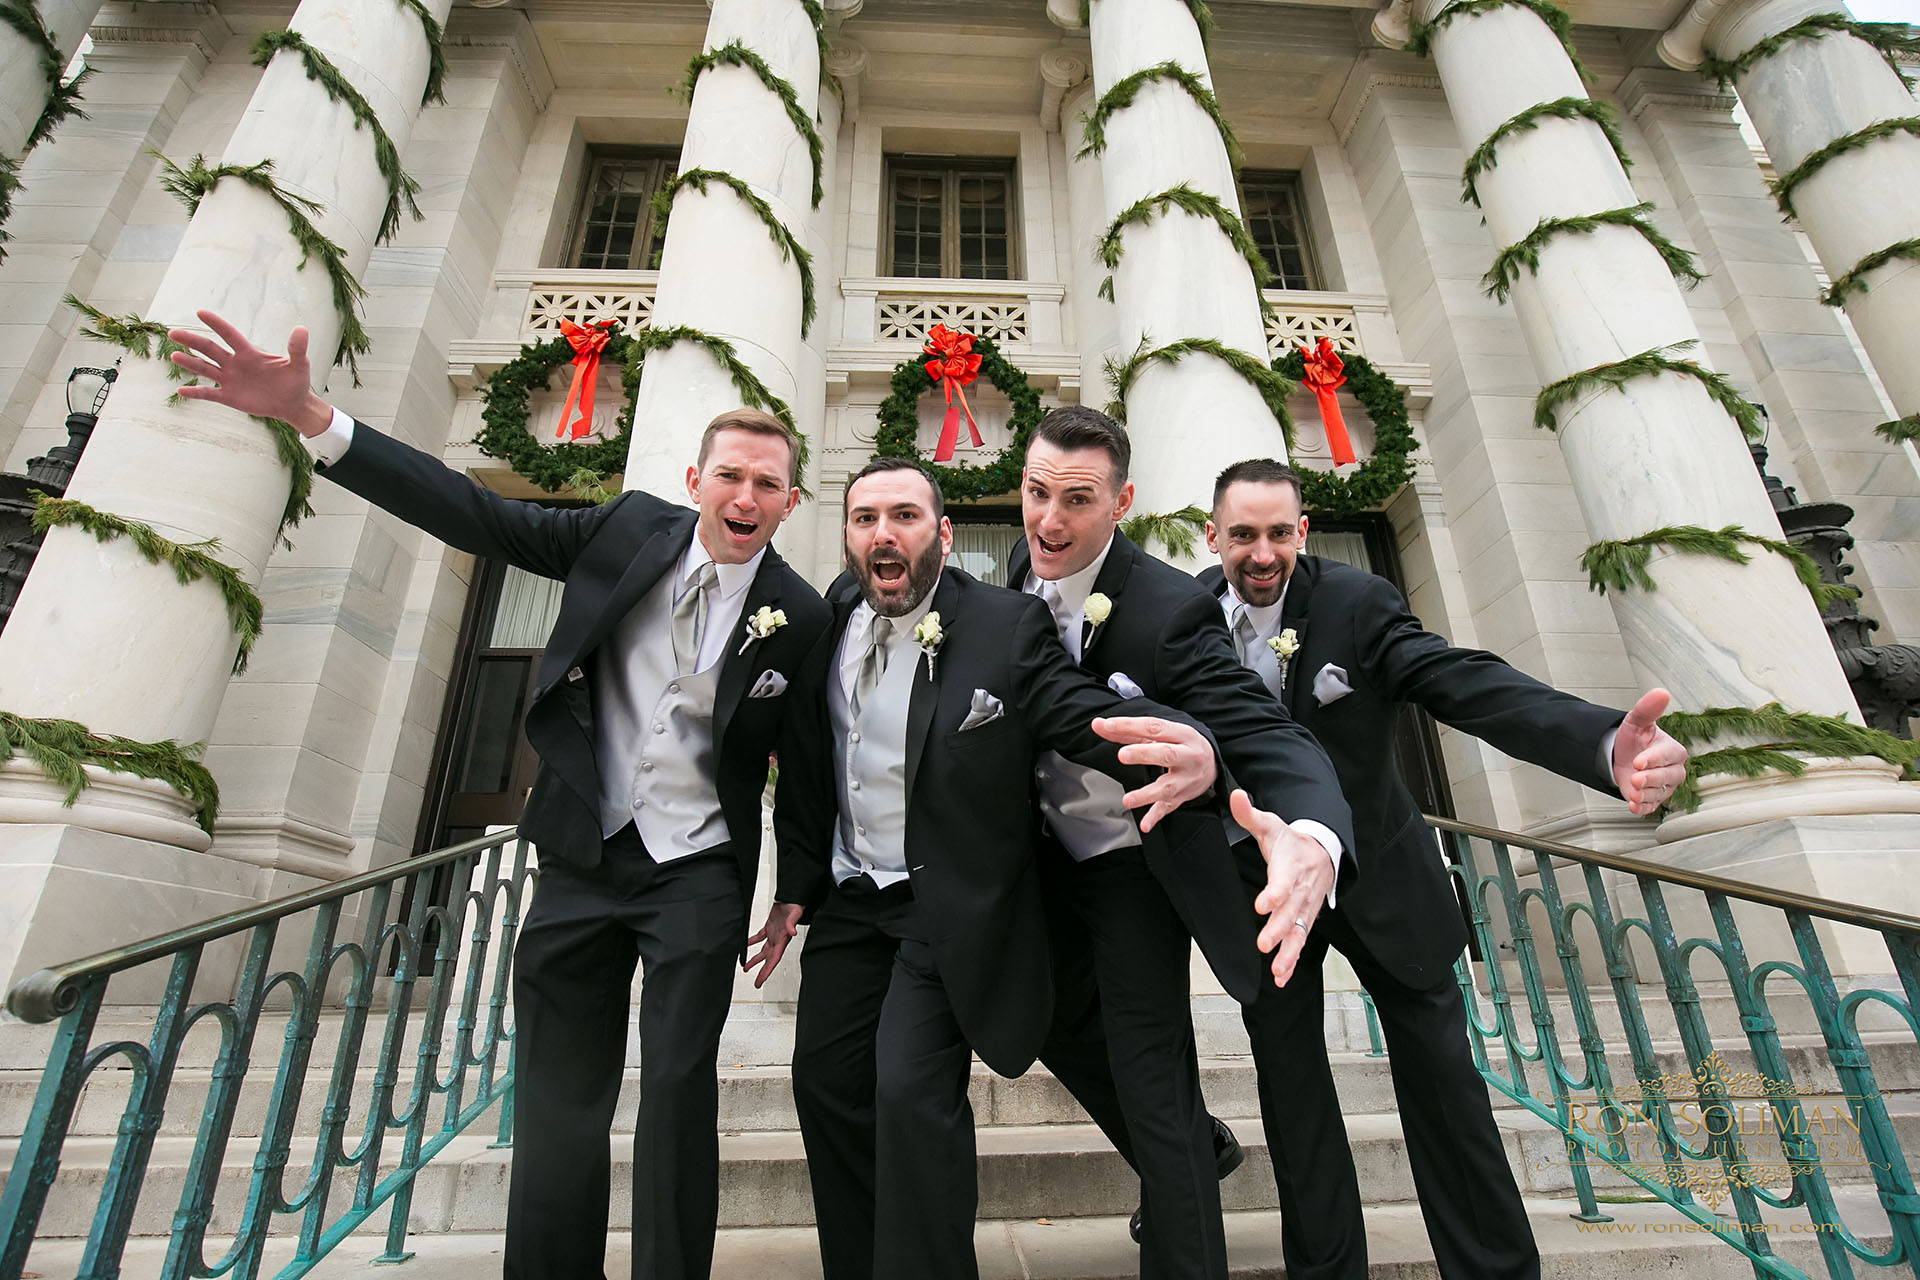 Media Pennsylvania Courthouse wedding photos